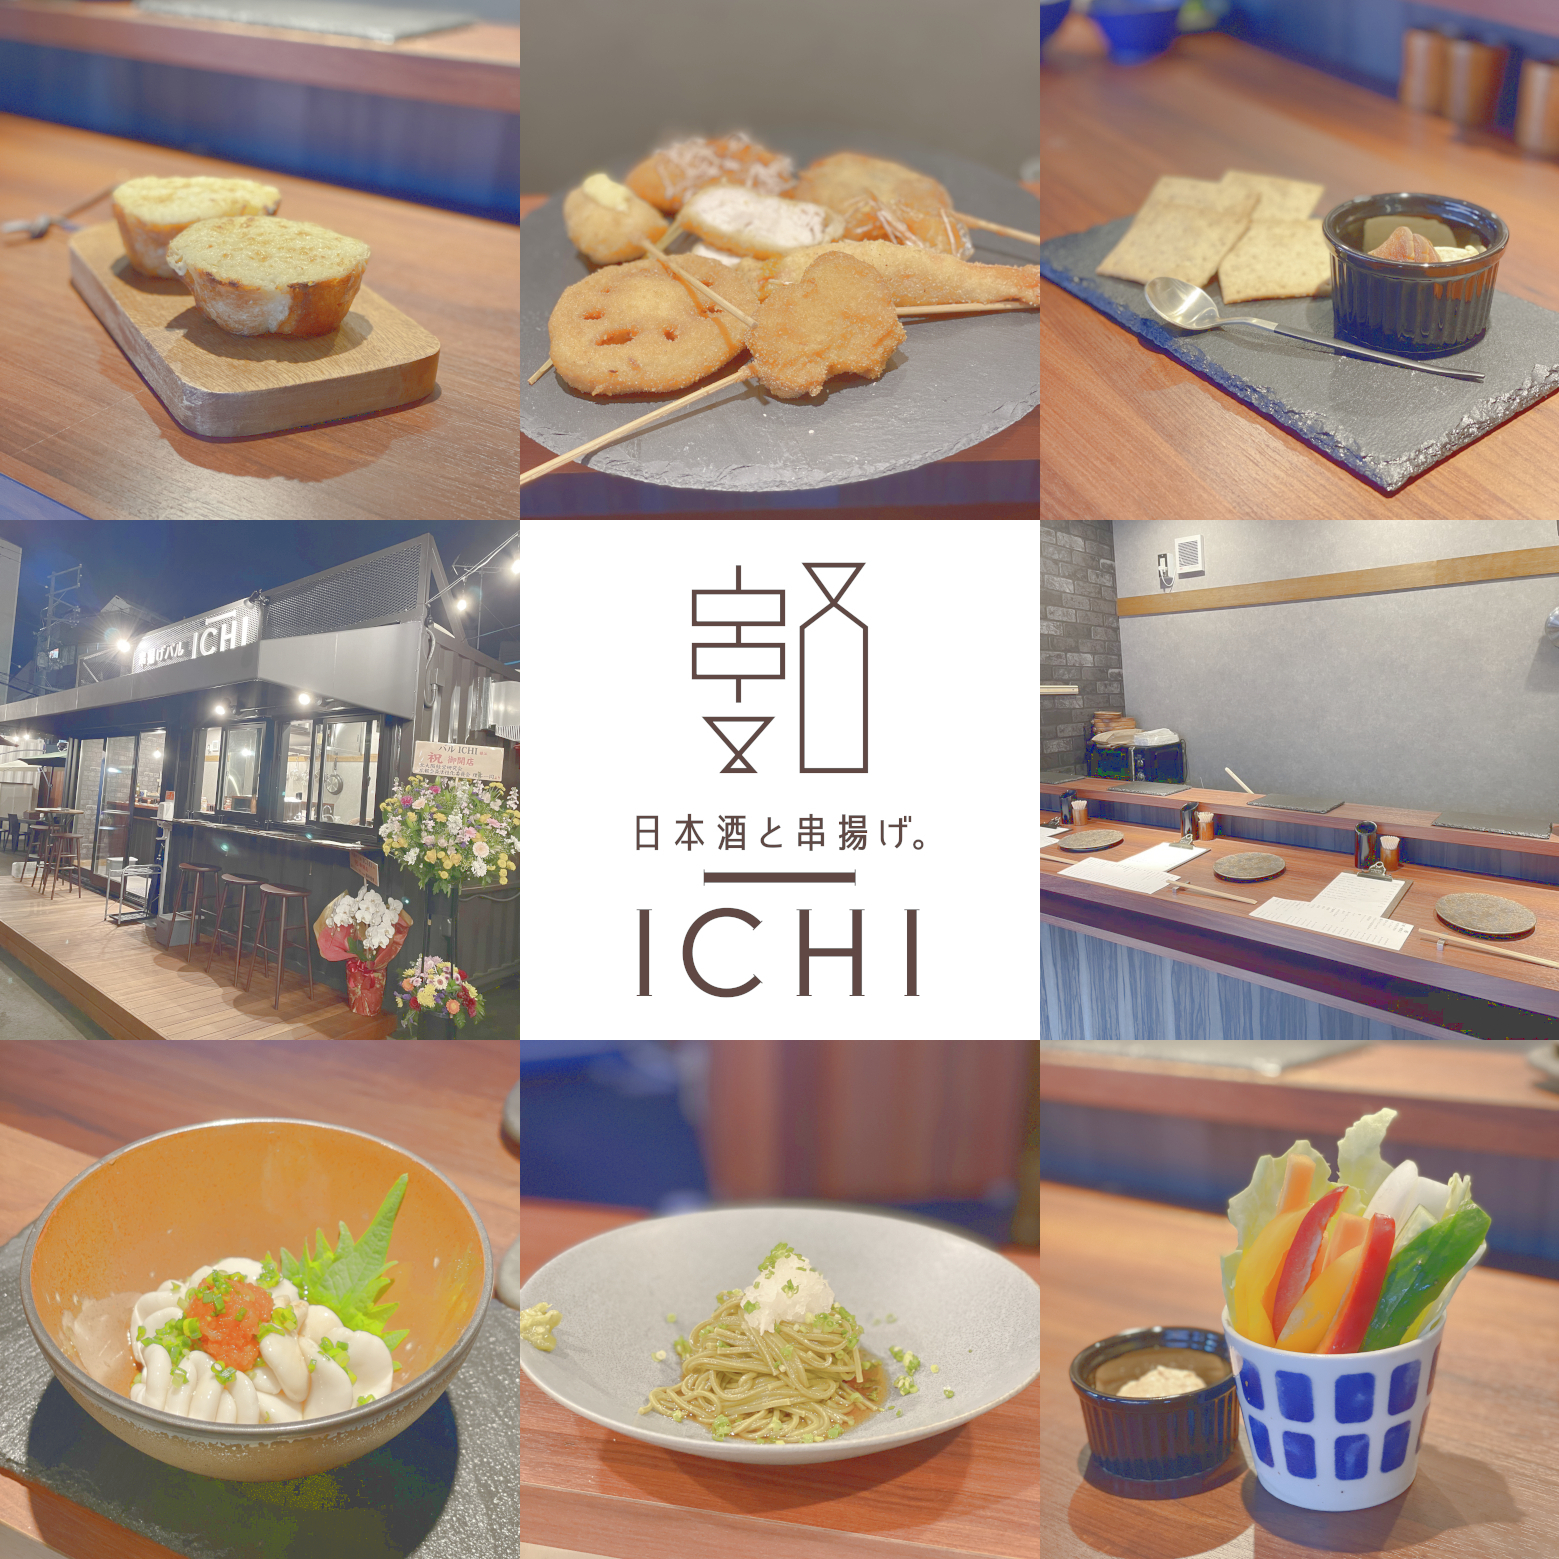 日本酒と串揚げ。ICHIのソーシャルメディア